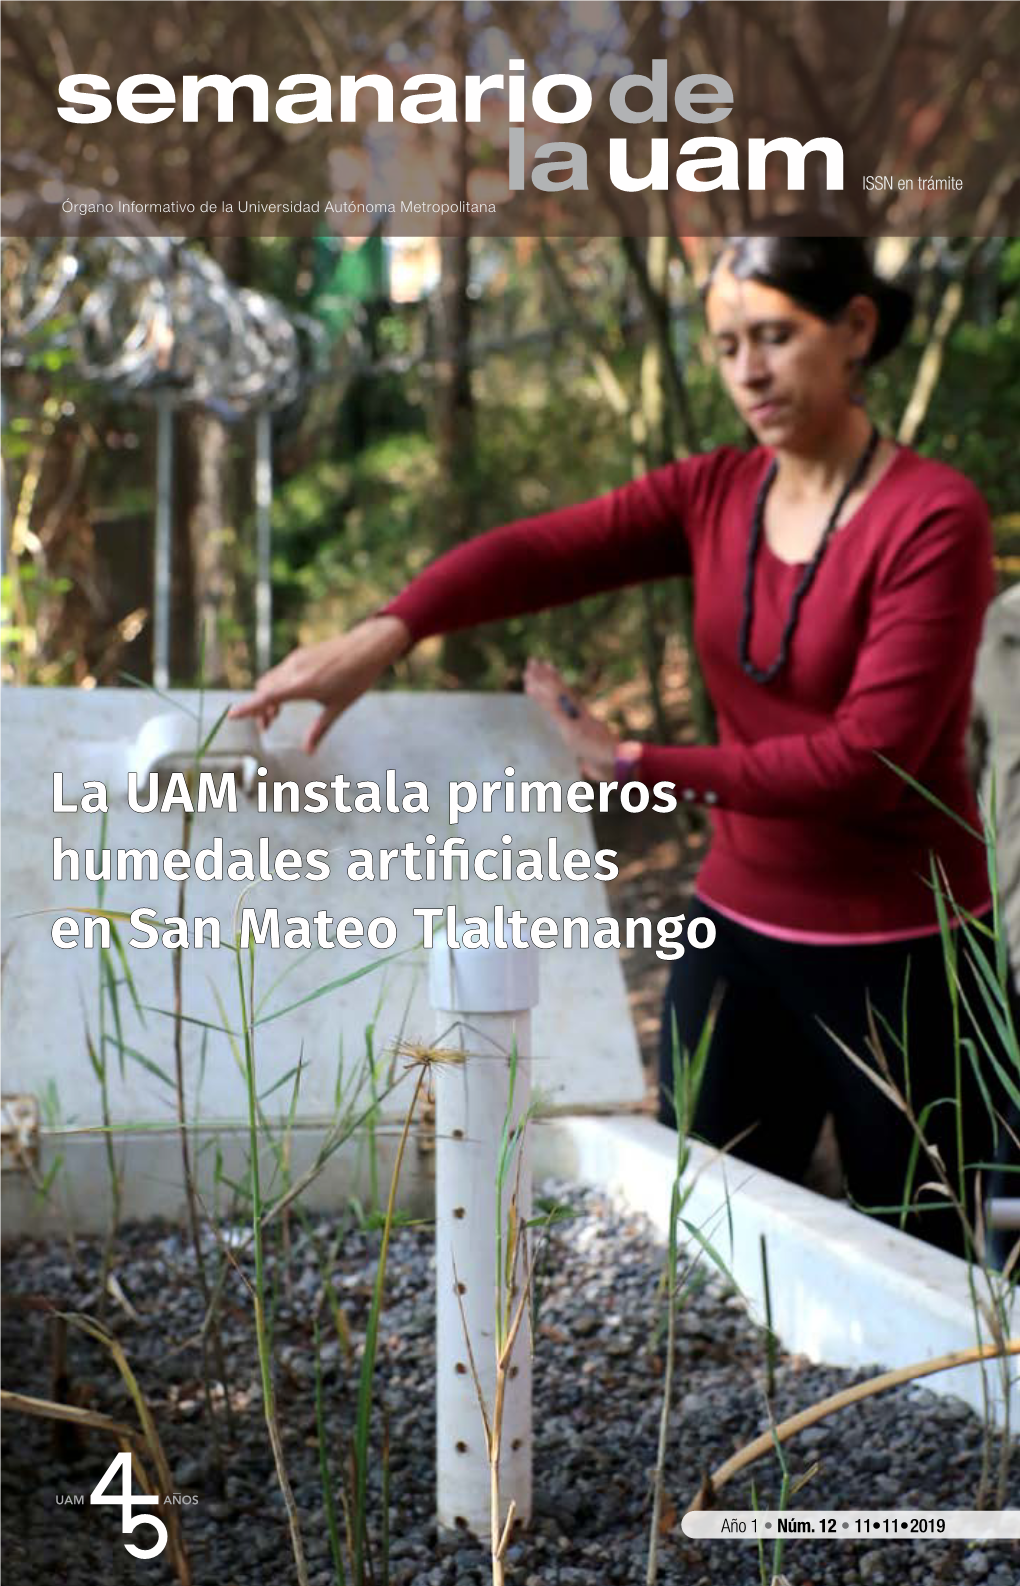 La UAM Instala Primeros Humedales Artificiales En San Mateo Tlaltenango